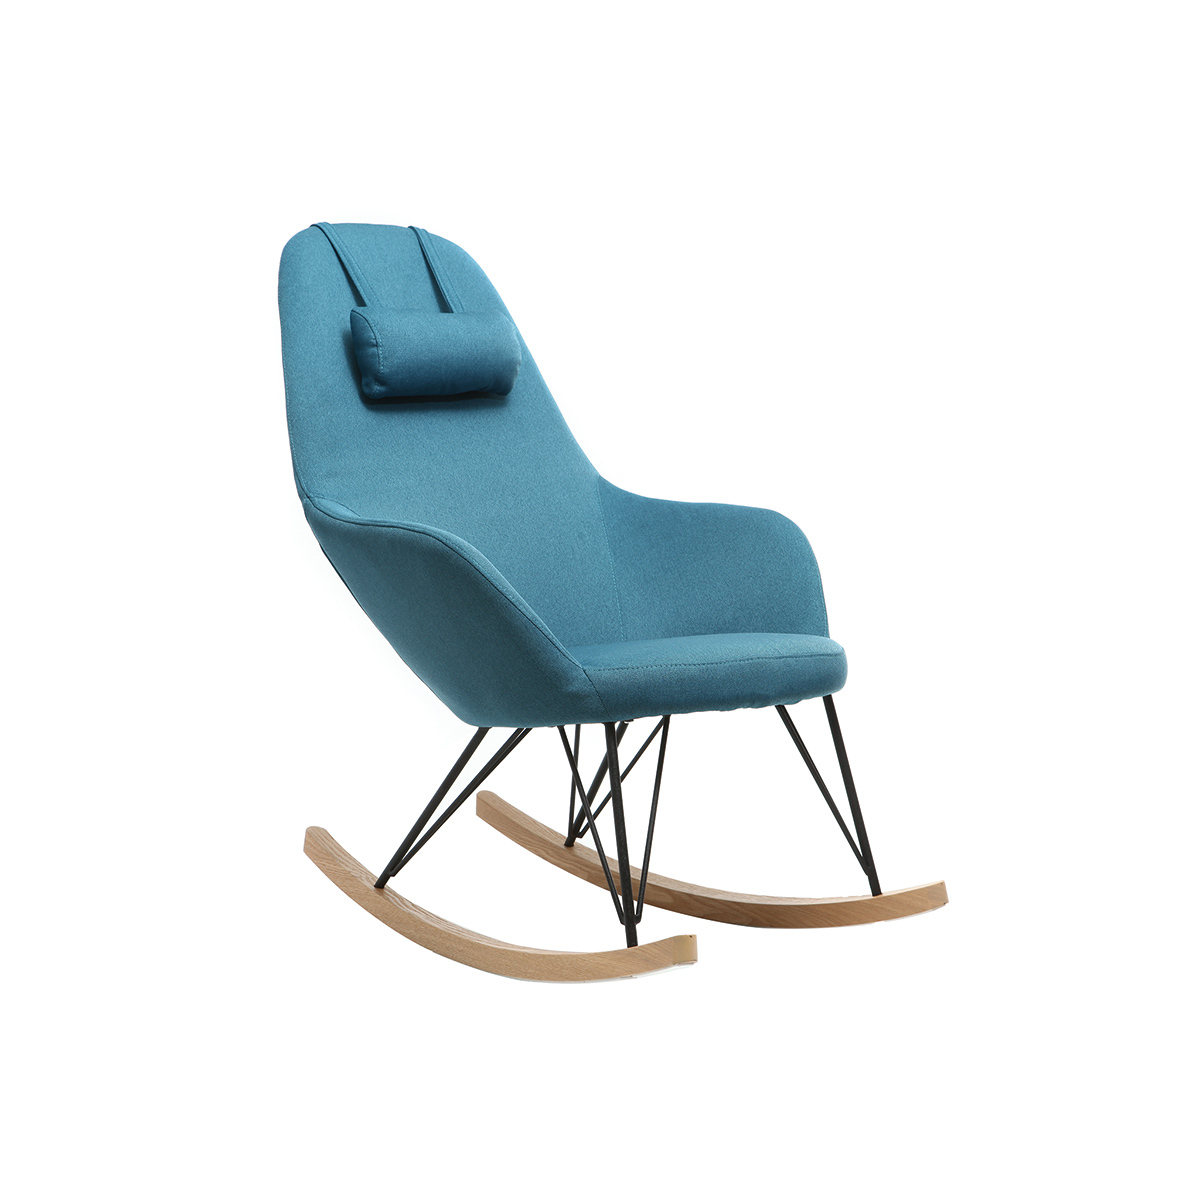 Rocking chair scandinave en tissu bleu canard, métal noir et bois clair JHENE vue1